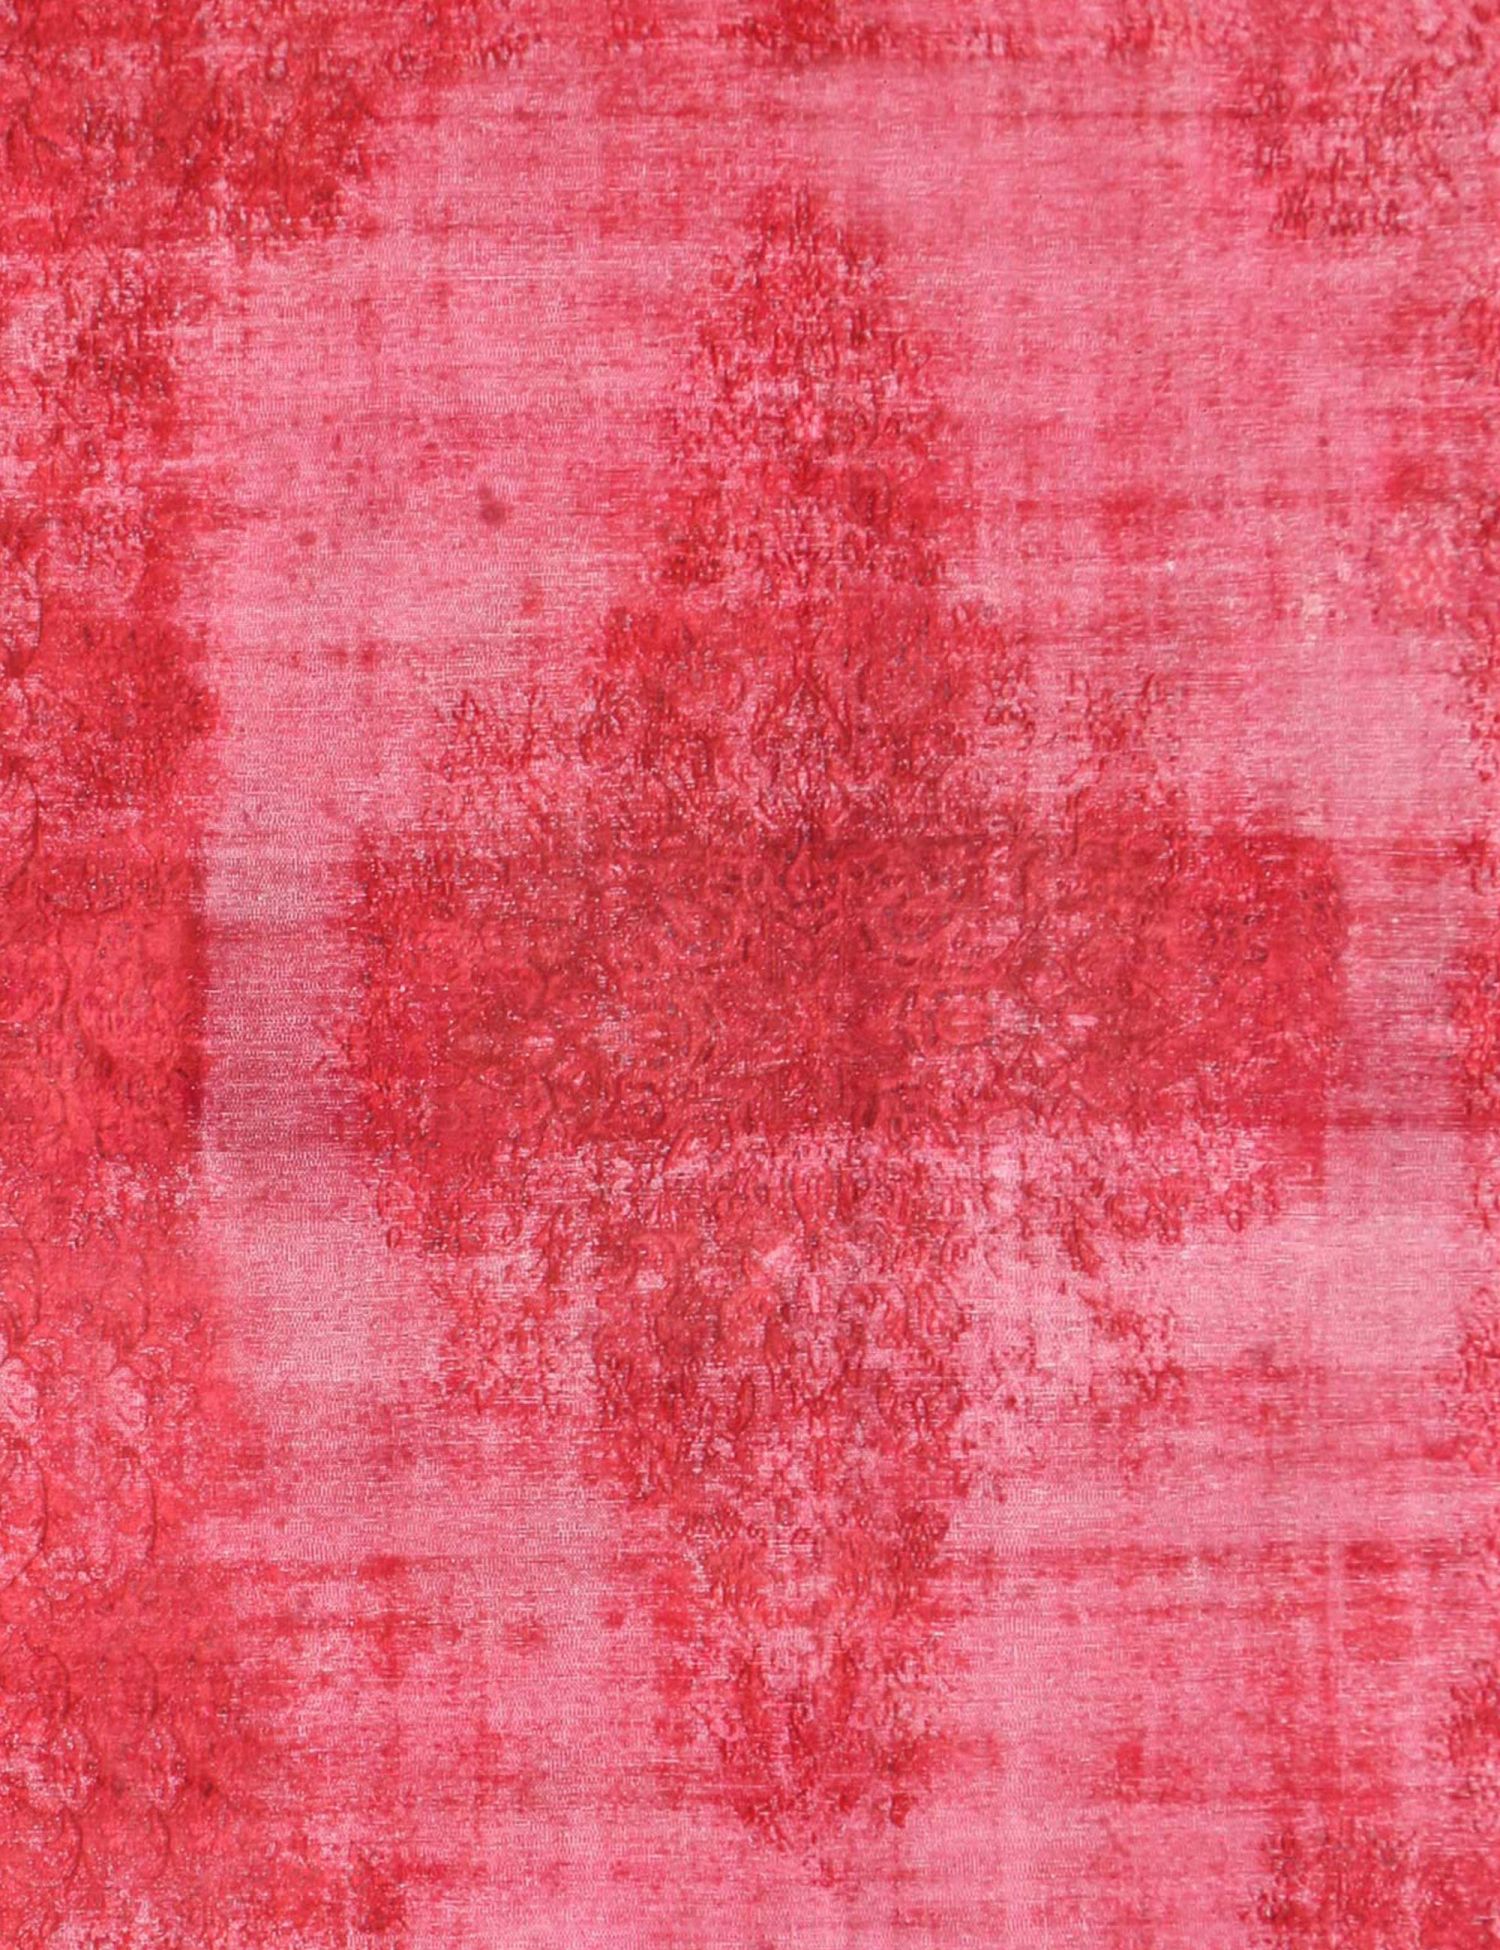 Περσικό Vintage Χαλί  Κόκκινο <br/>389 x 286 cm